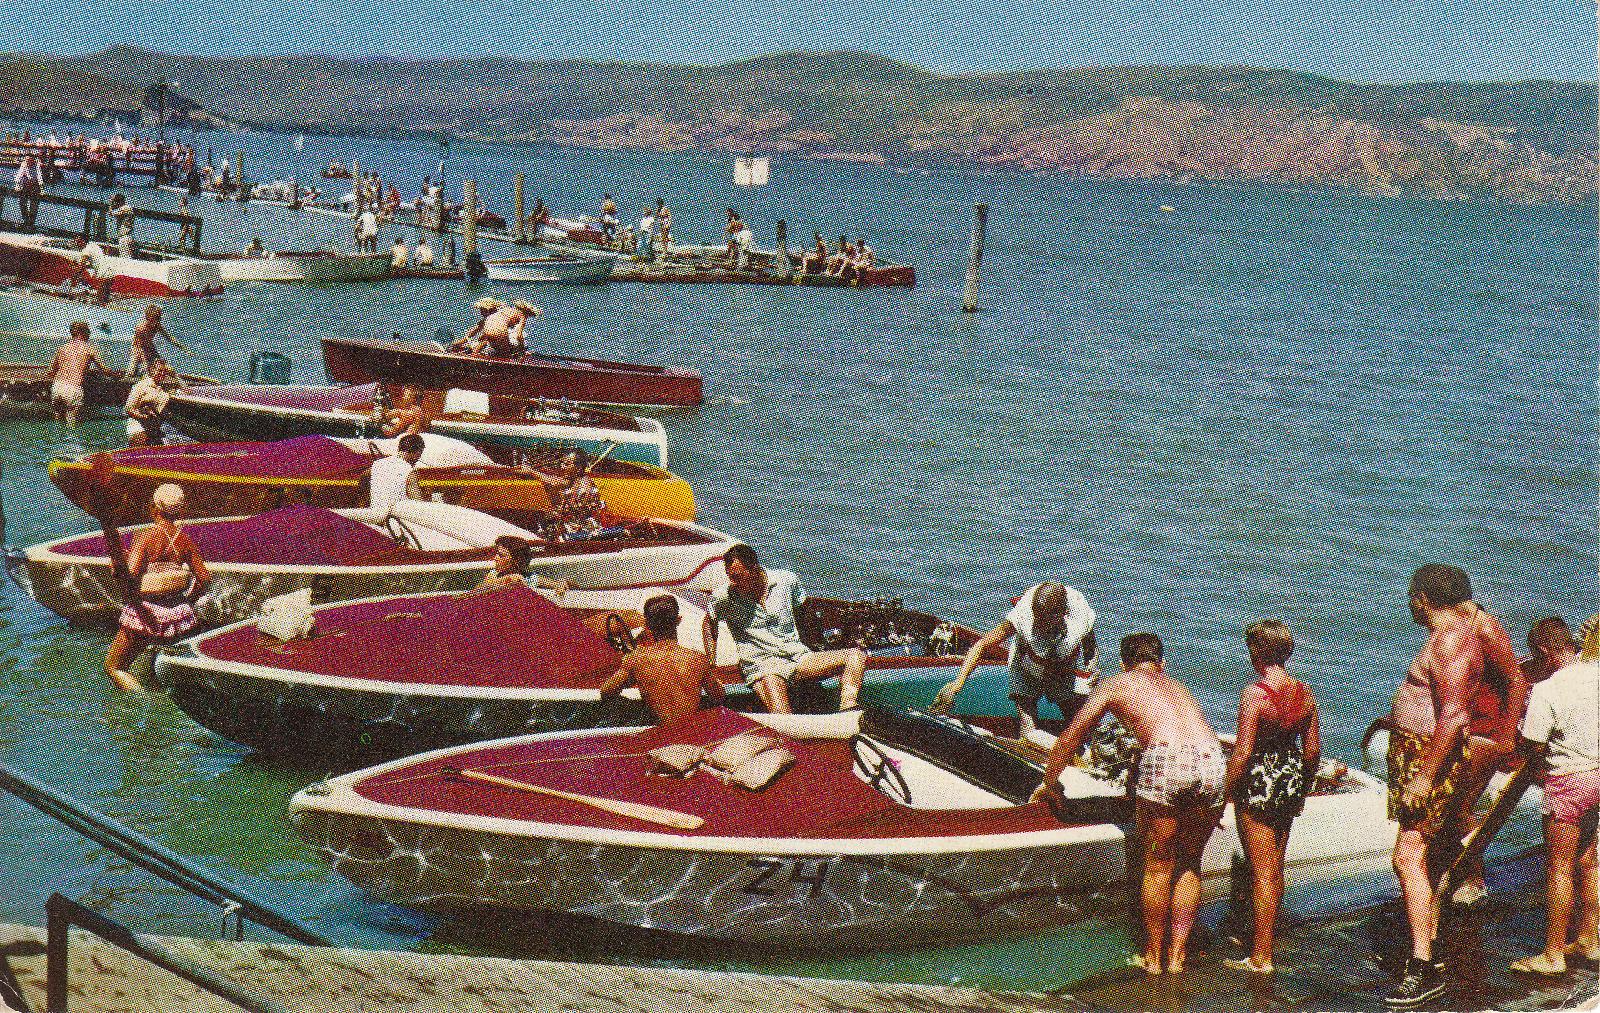 Boat races 1960s color